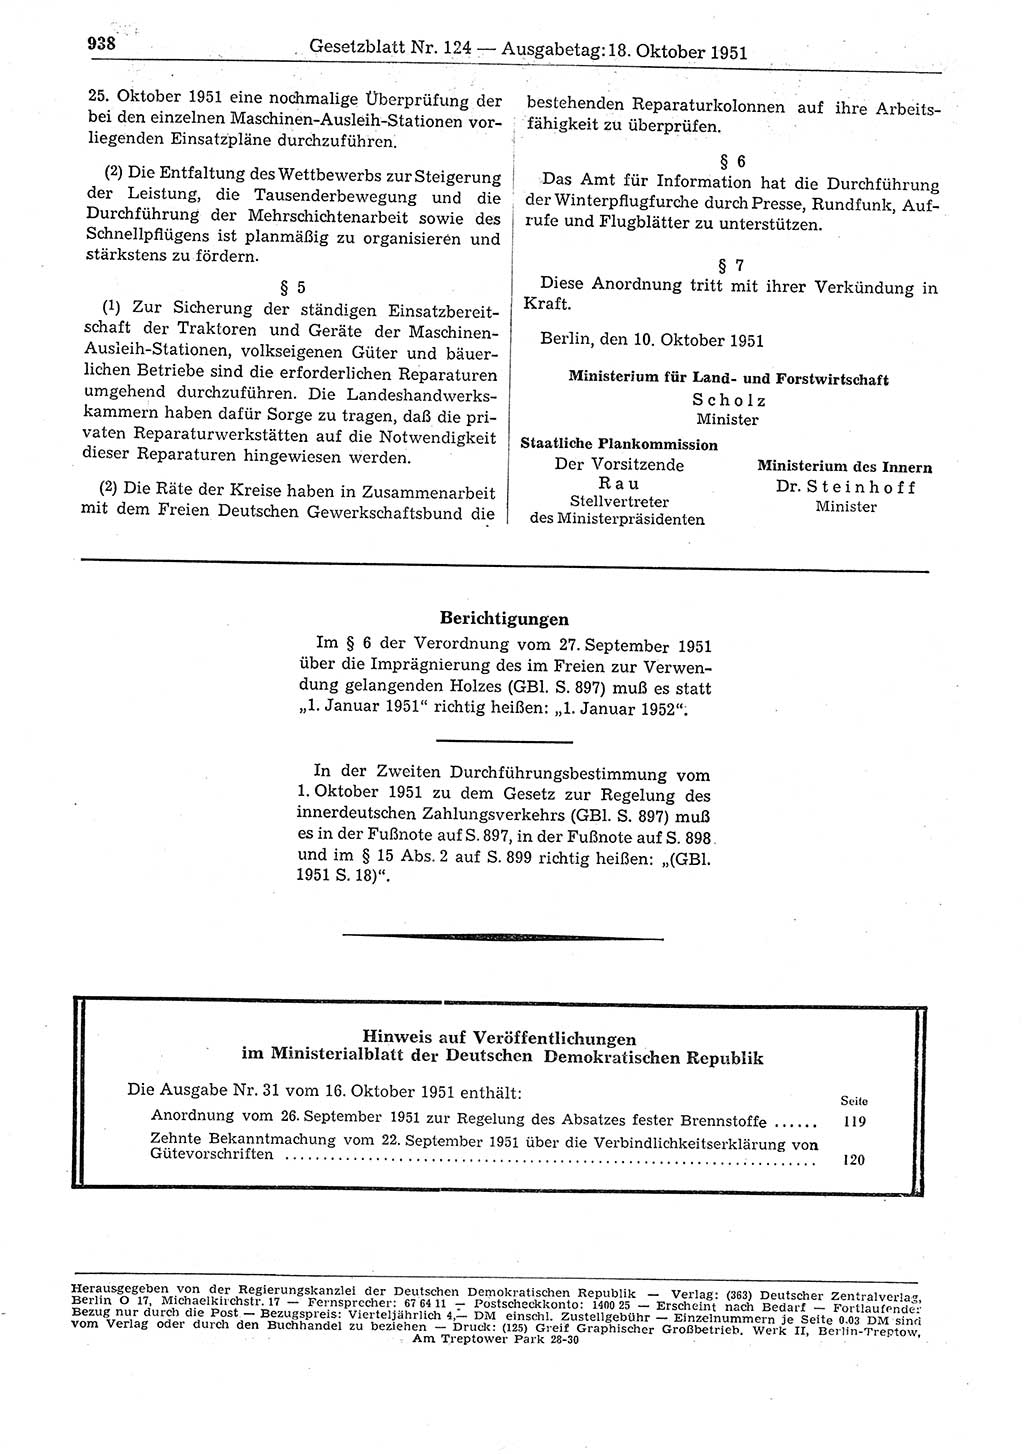 Gesetzblatt (GBl.) der Deutschen Demokratischen Republik (DDR) 1951, Seite 938 (GBl. DDR 1951, S. 938)